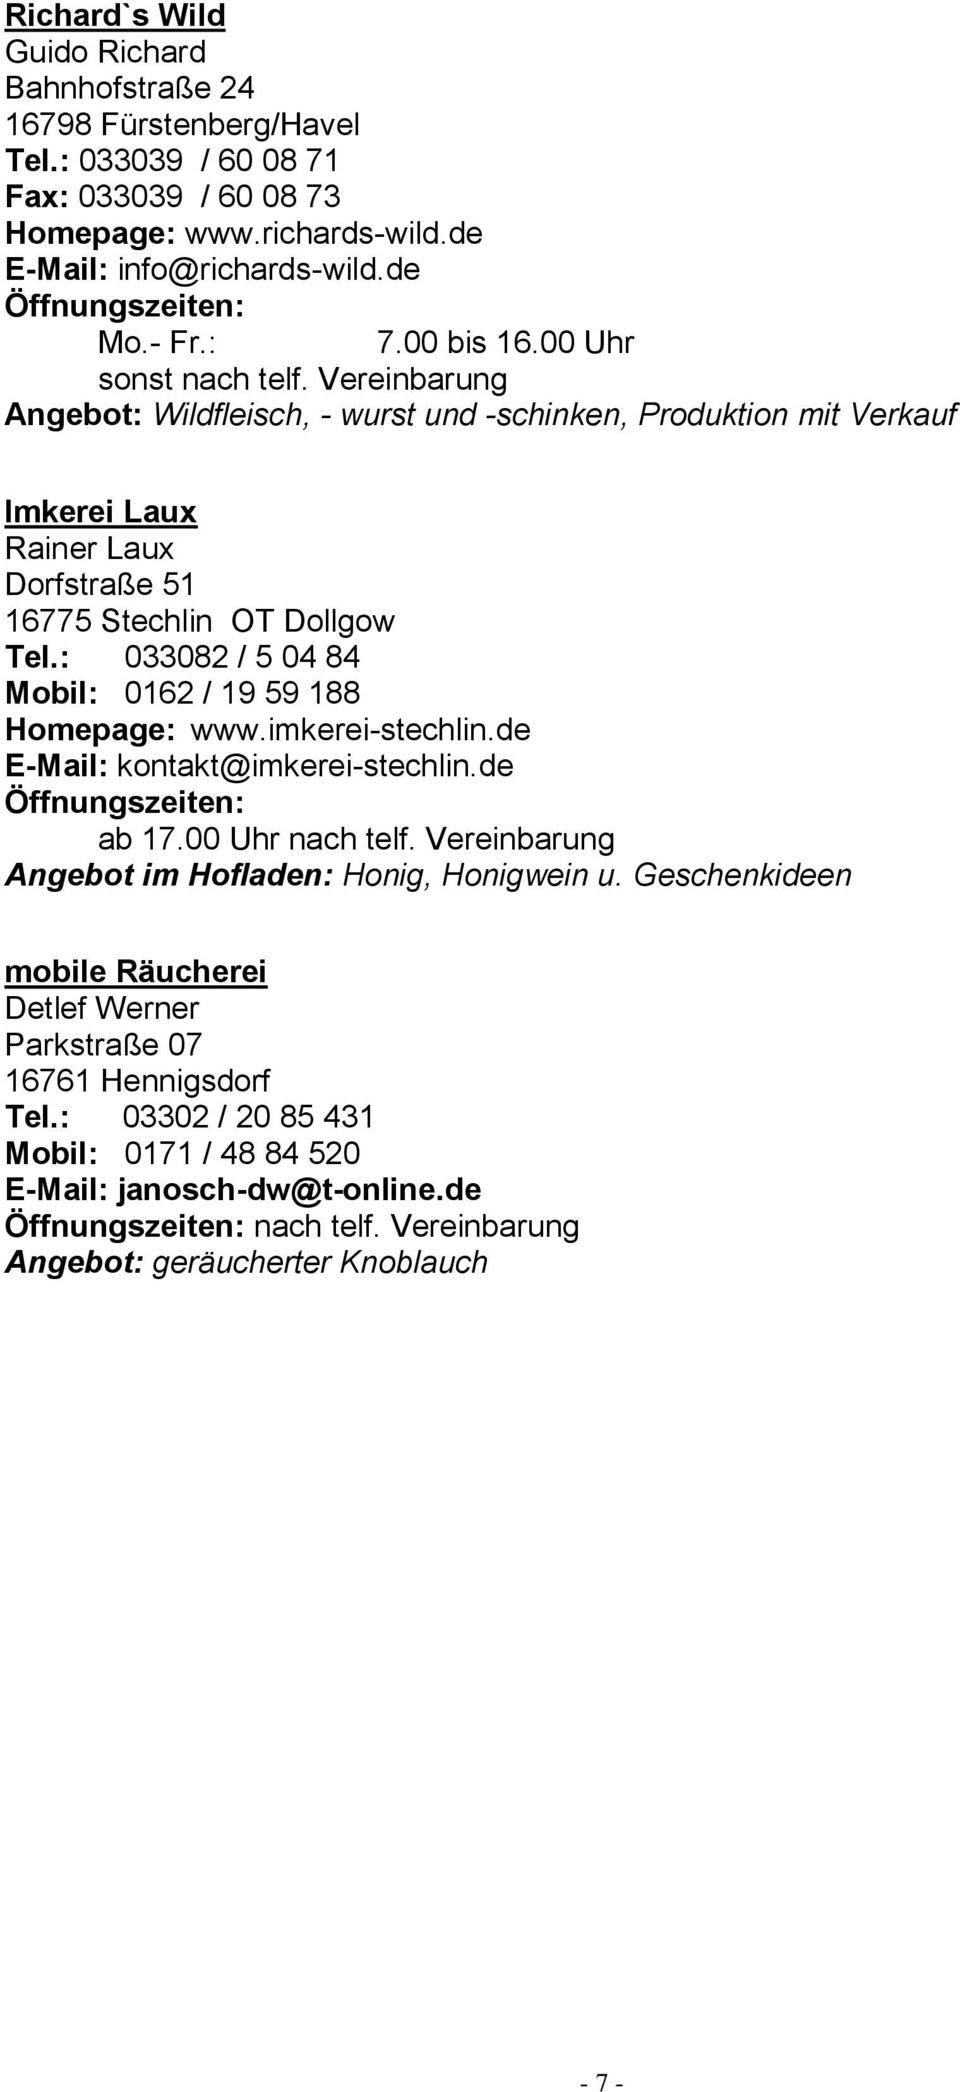 : 033082 / 5 04 84 Mobil: 0162 / 19 59 188 Homepage: www.imkerei-stechlin.de E-Mail: kontakt@imkerei-stechlin.de ab 17.00 Uhr nach telf. Vereinbarung Angebot im Hofladen: Honig, Honigwein u.